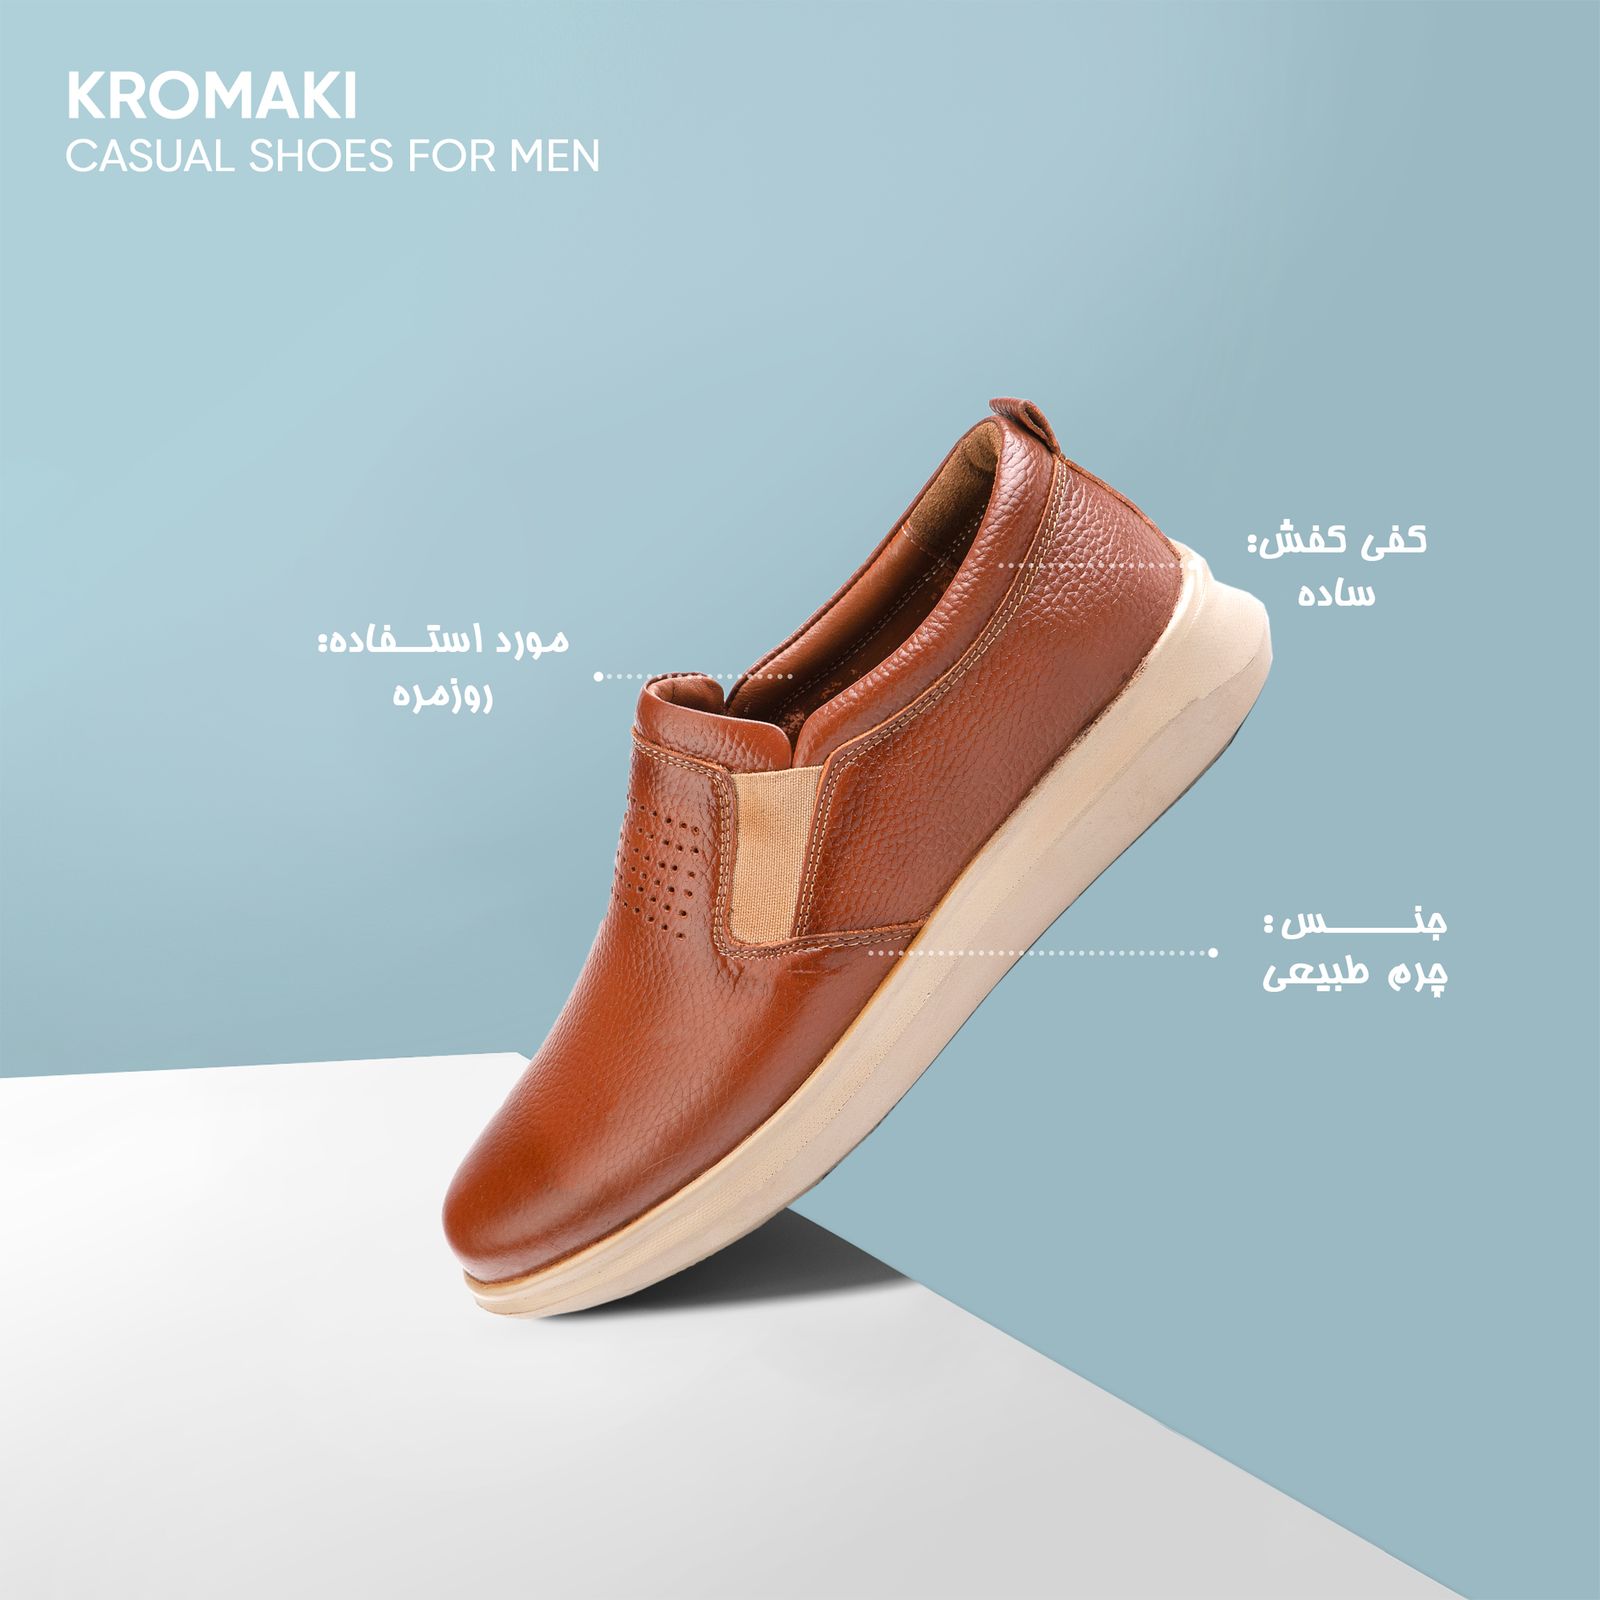 کفش روزمره مردانه کروماکی مدل KM11573 -  - 7